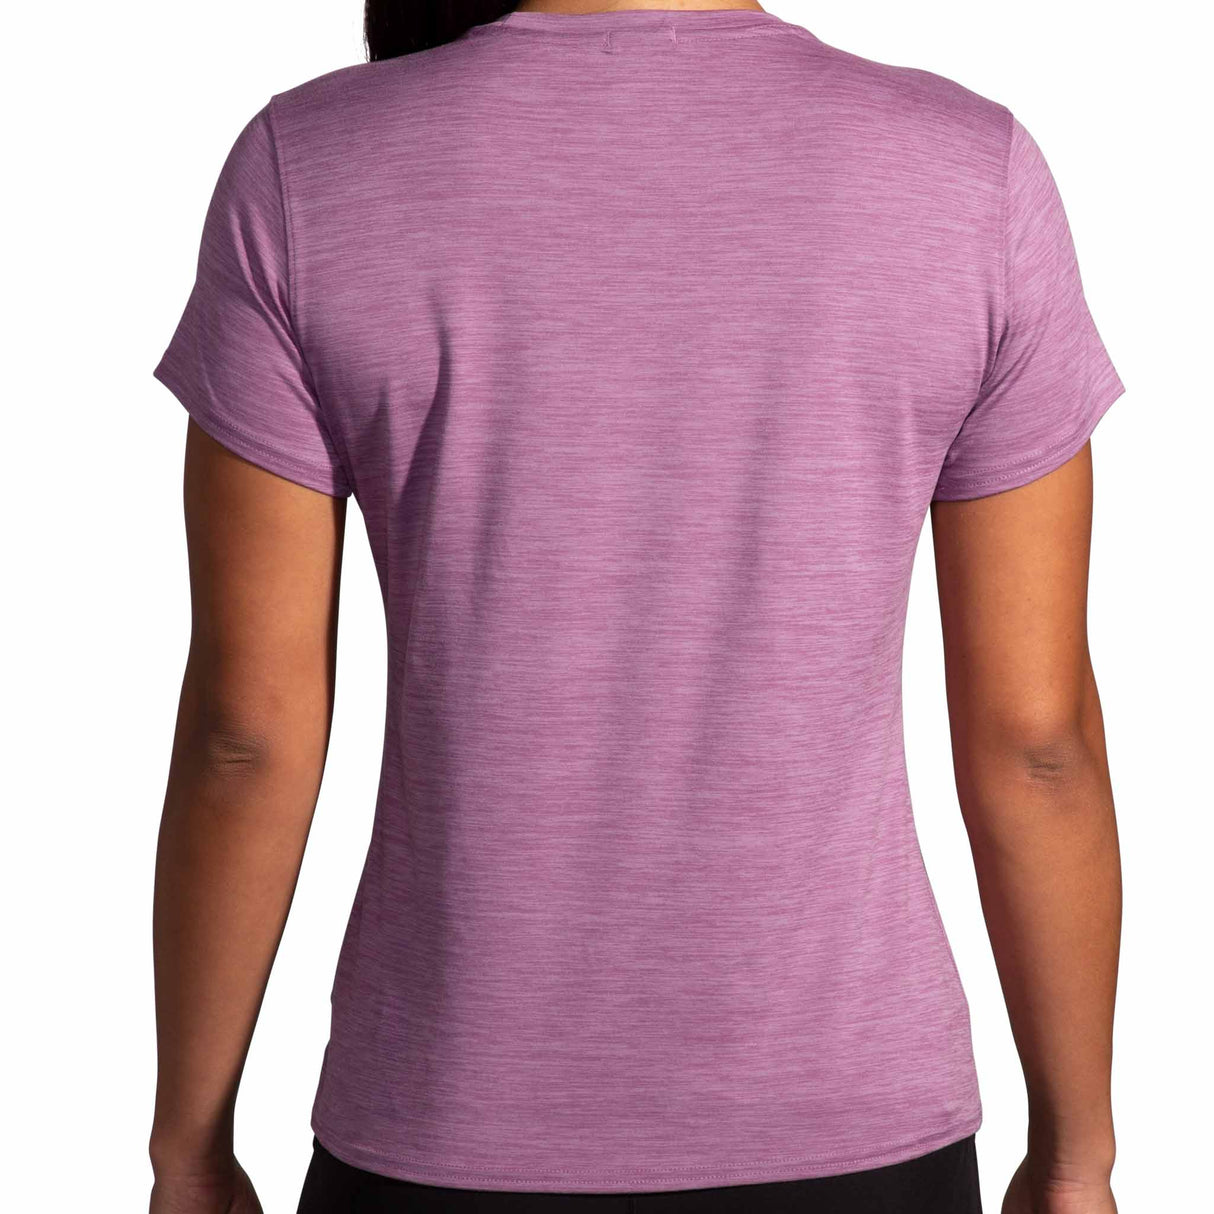 Brooks Luxe T-shirt de course à pied à manches courtes pour femme - Heather Washed Plum